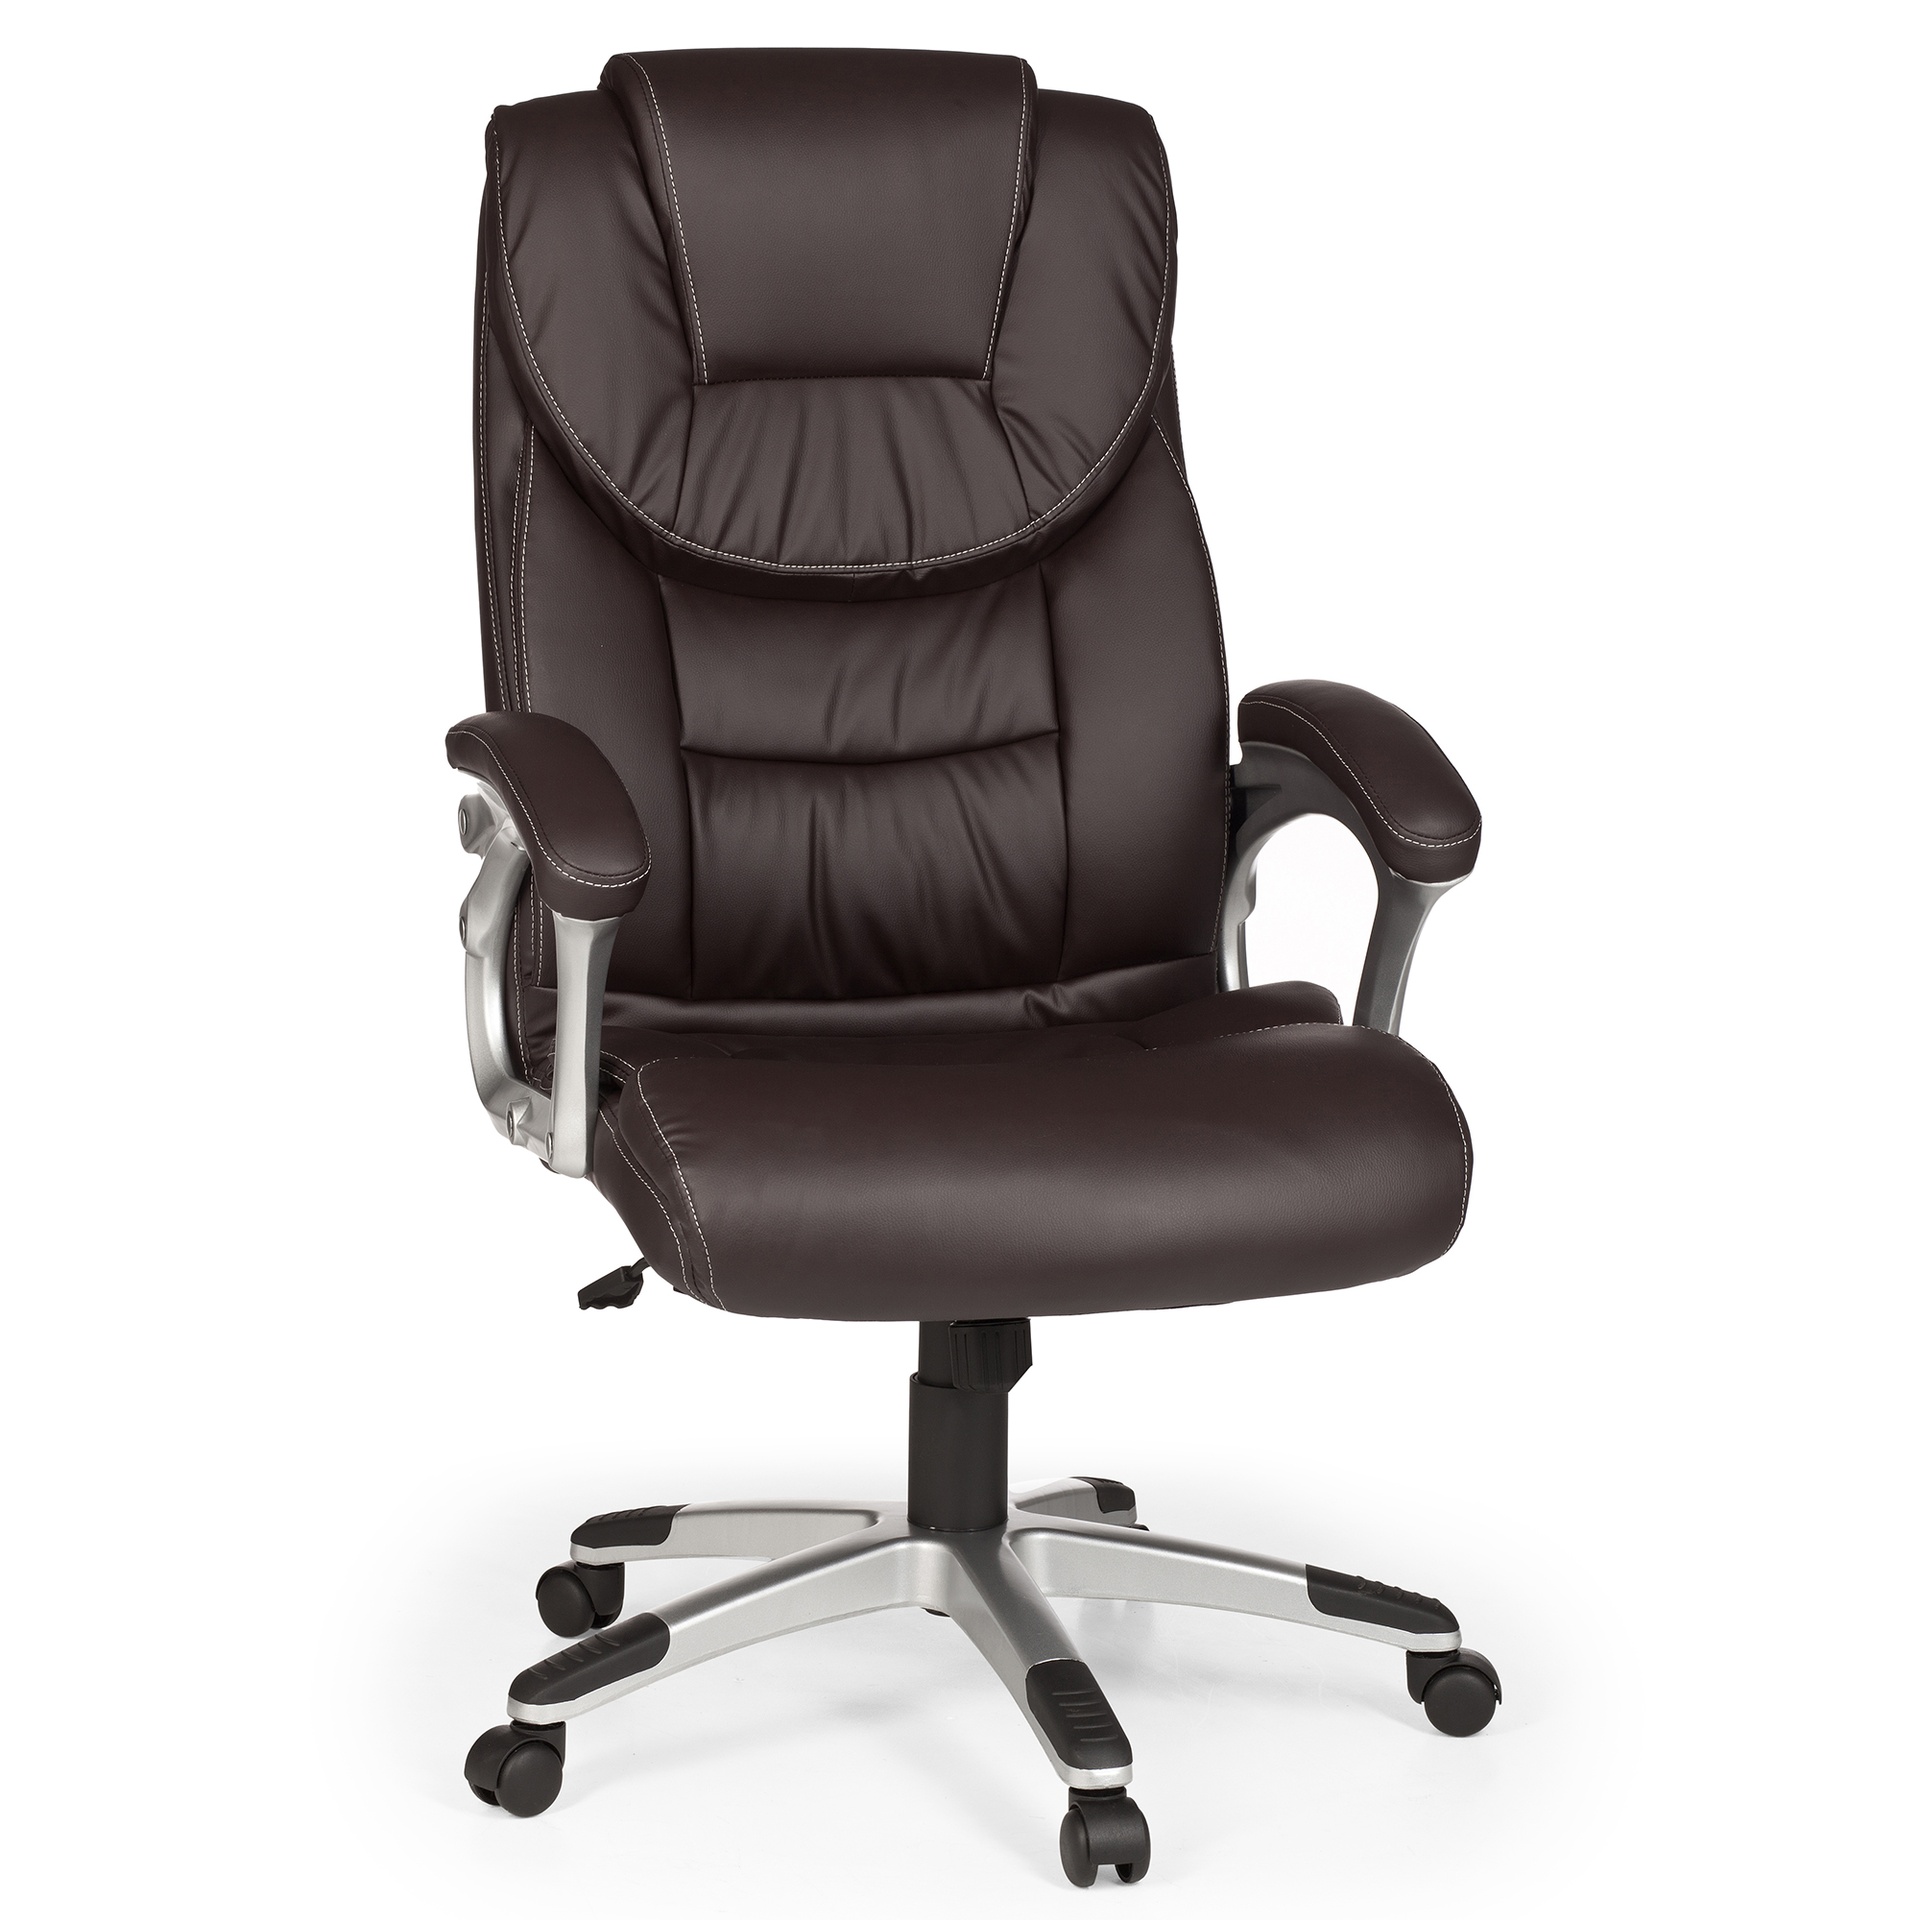 [A09413] Chaise de bureau Madrid cuir artificiel marron ergonomique avec appui-tête